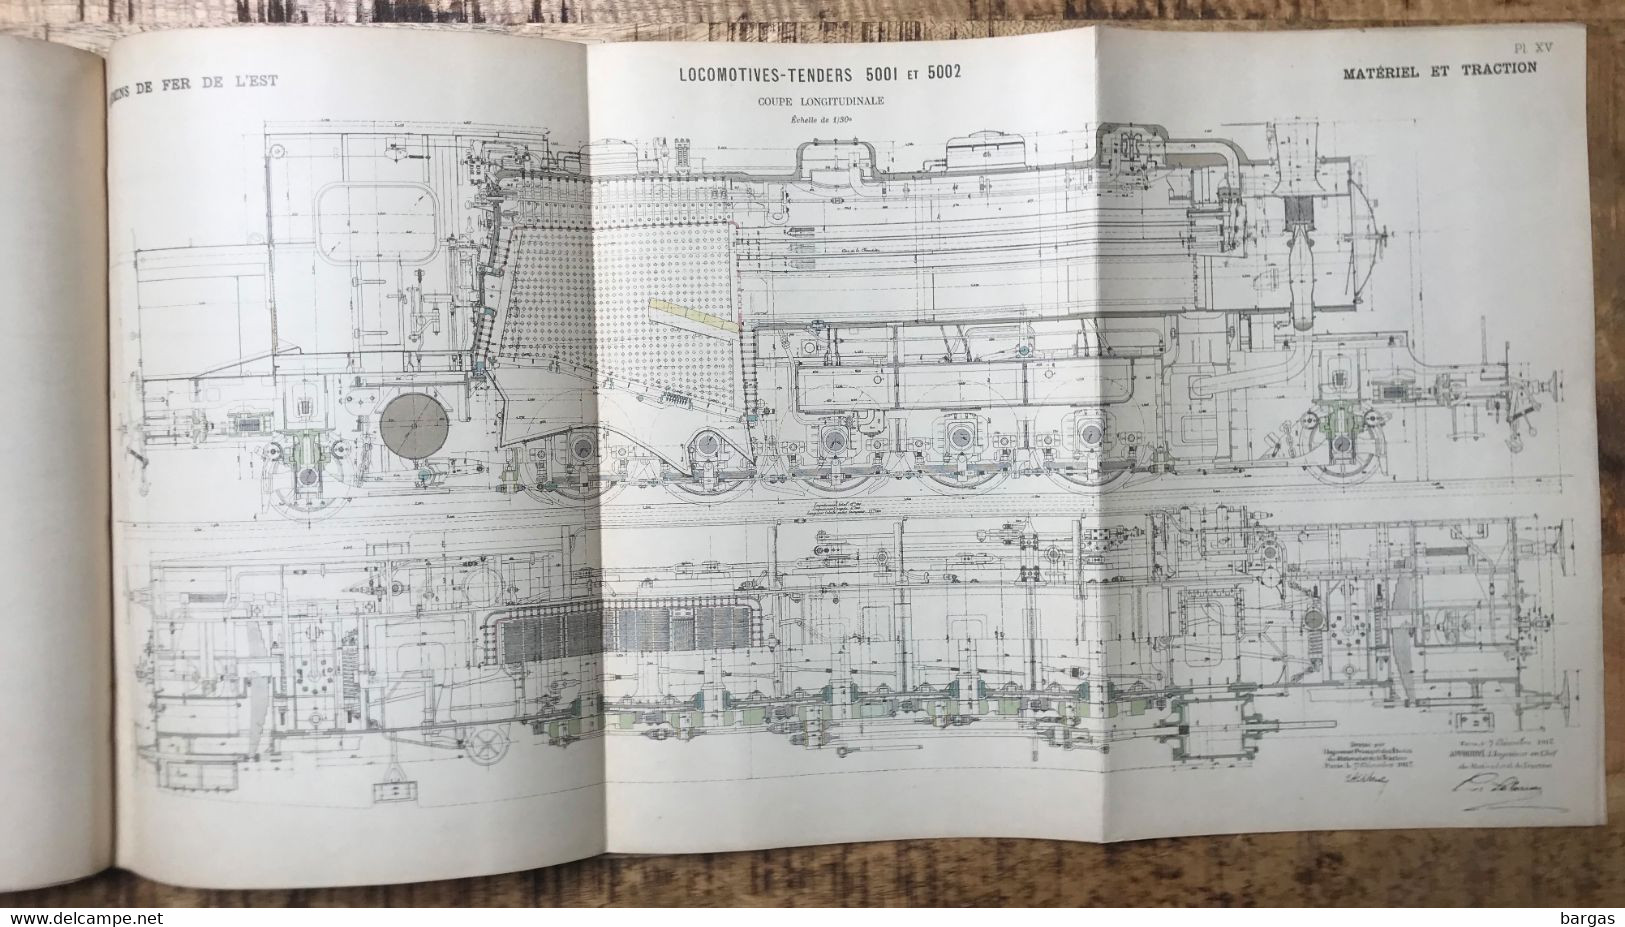 1913 beau livre de la Compagnie des chemins de fer de l'est exposition de gand train locomotive vapeur belles planches